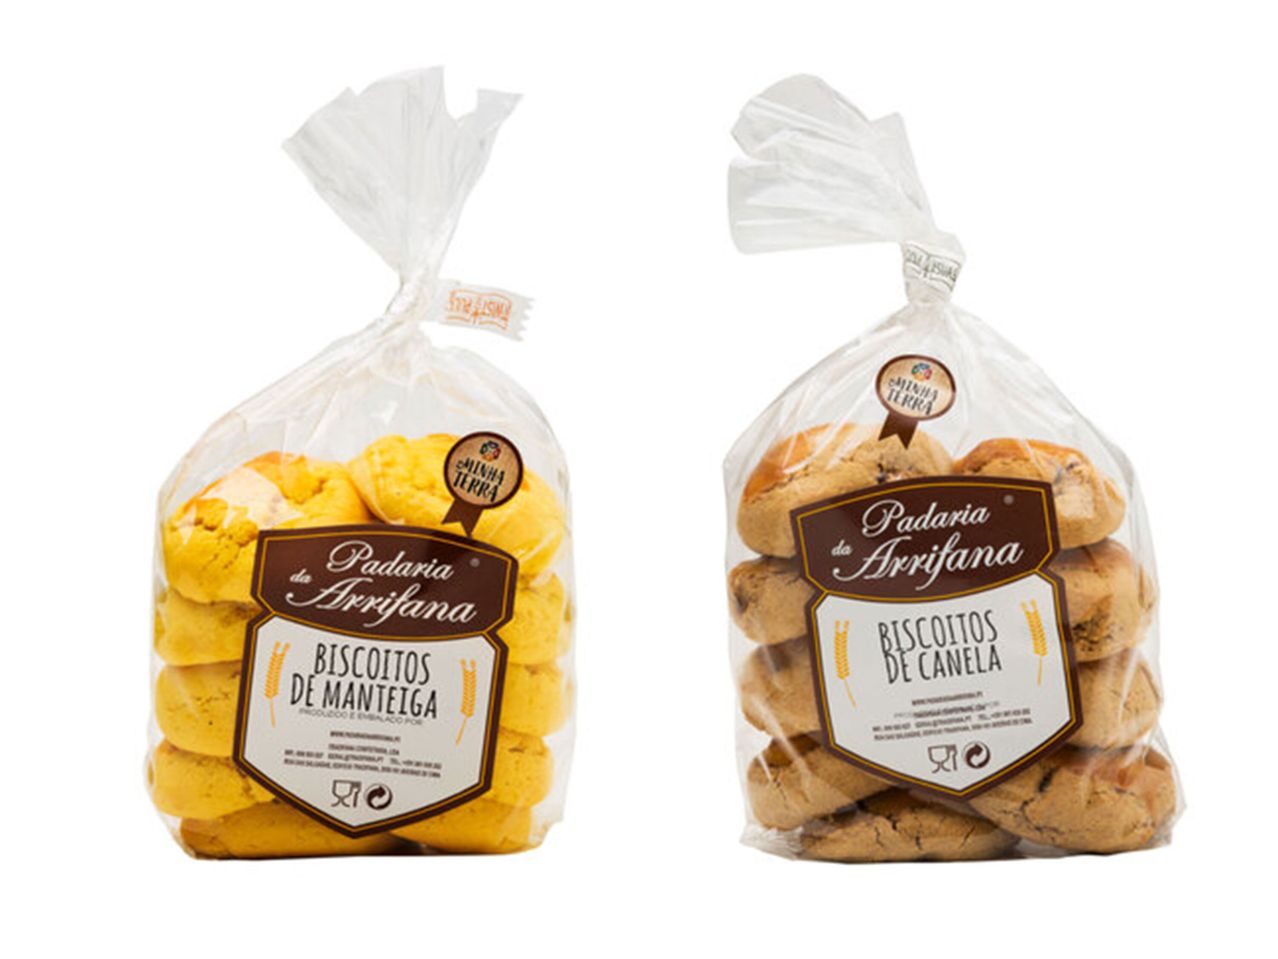 Ver empliada: Padaria da Arrifana® Biscoitos de Manteiga/ Canela - Imagem 1